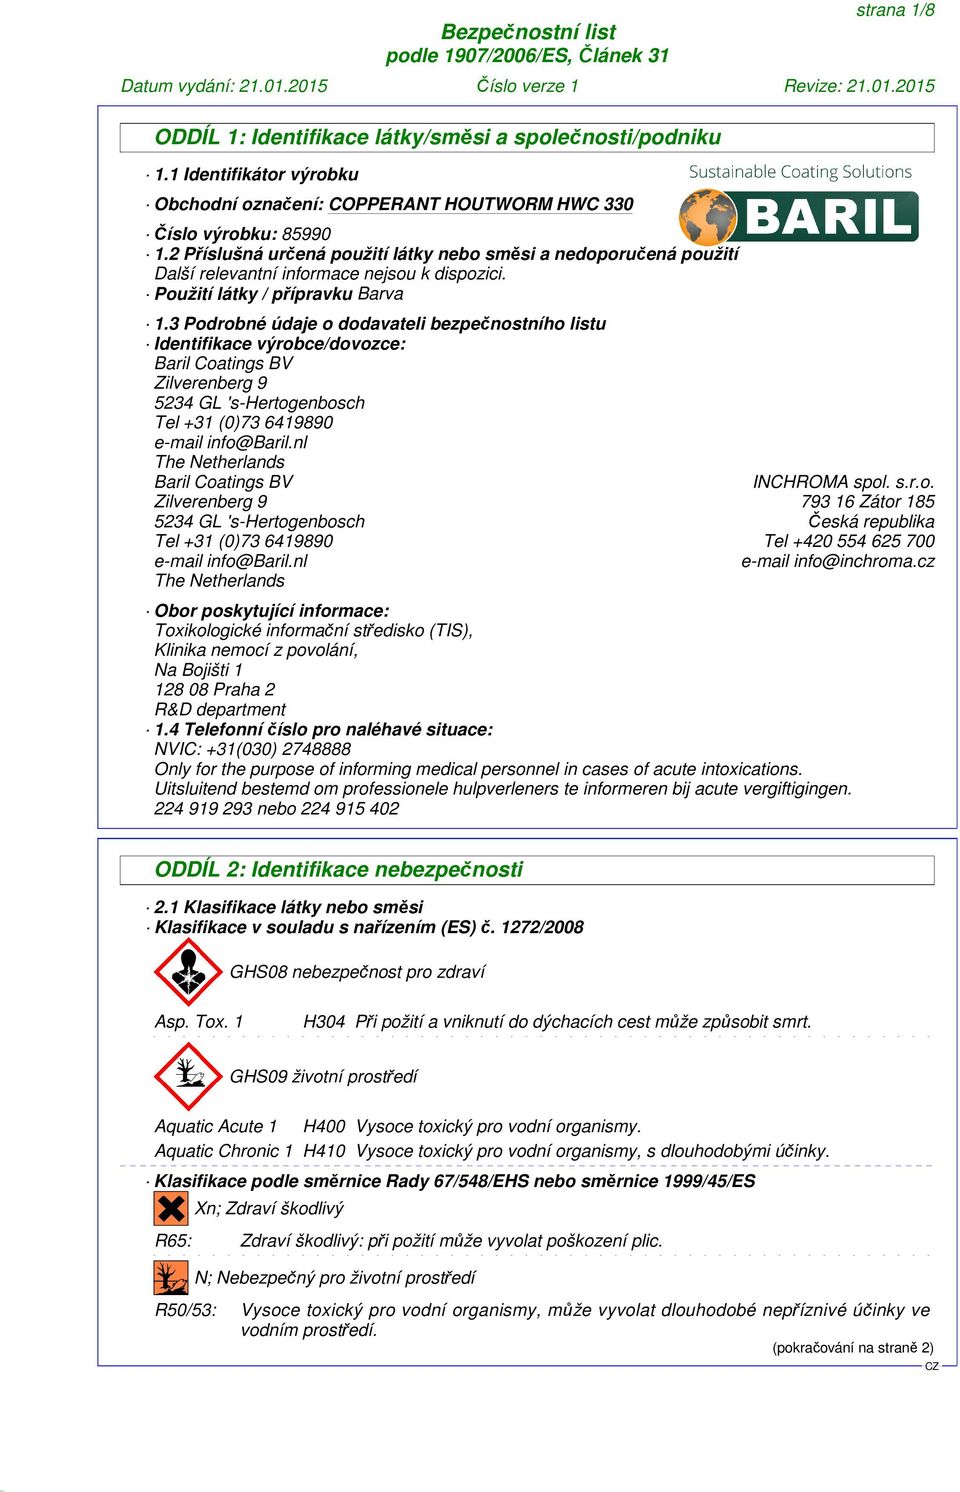 3 Podrobné údaje o dodavateli bezpečnostního listu Identifikace výrobce/dovozce: Baril Coatings BV Zilverenberg 9 5234 GL 's-hertogenbosch Tel +31 (0)73 6419890 e-mail info@baril.